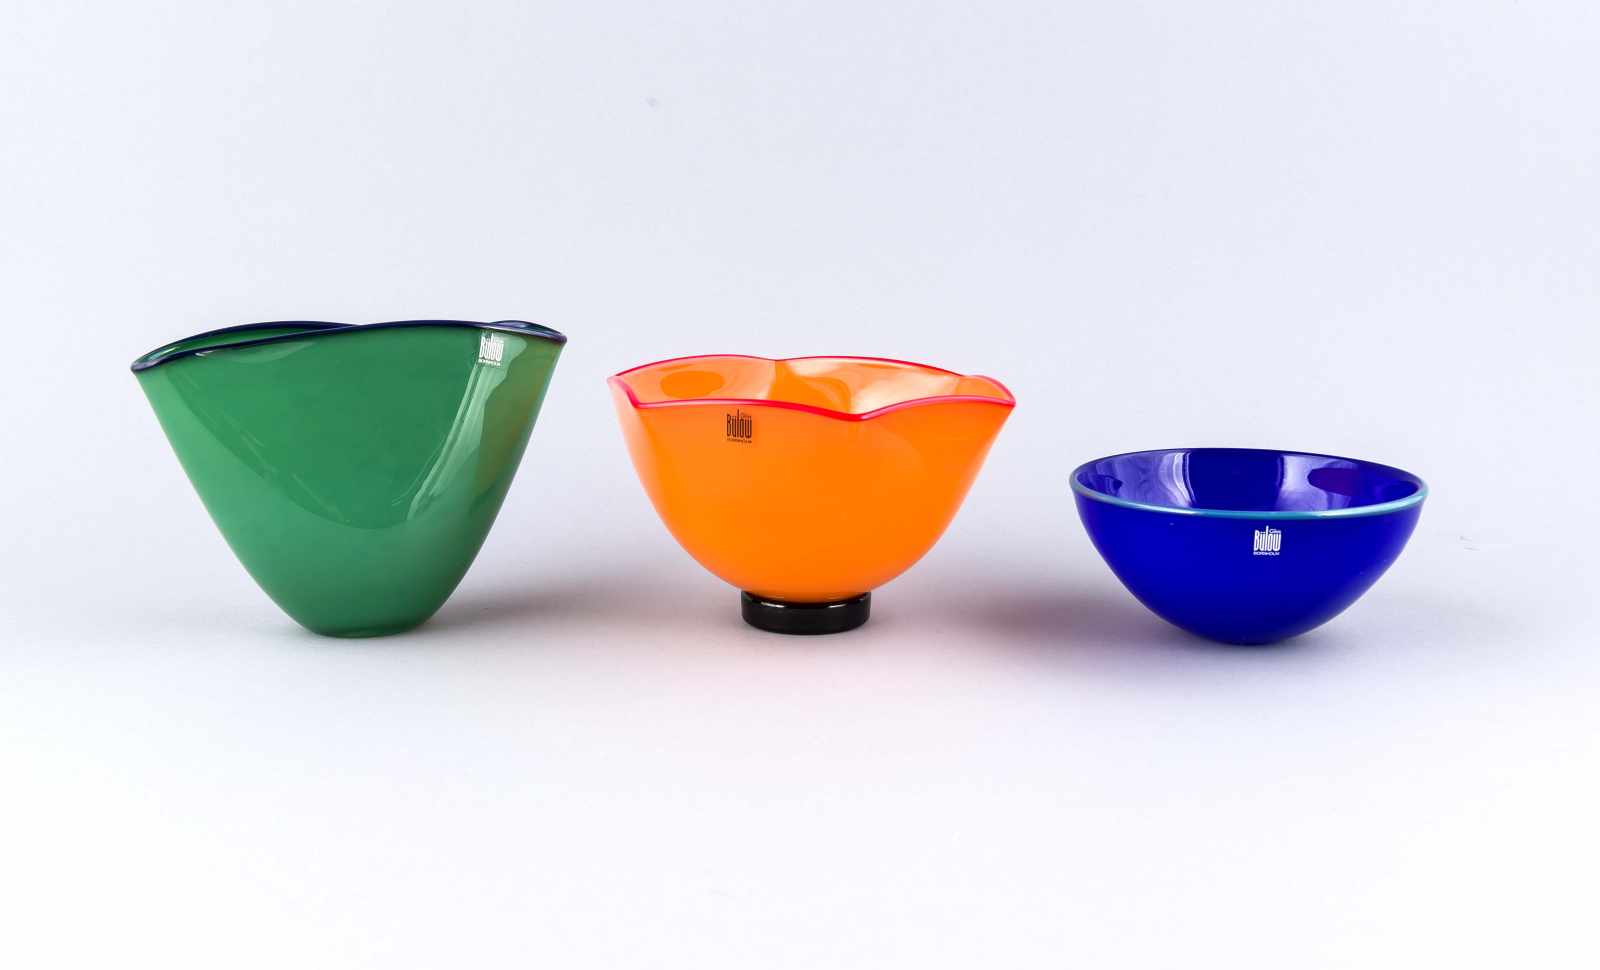 1 Vase und 2 Schalen, Bülow Glas, Bornholm, 1990er Jahre. Blaues, grünes und orangenes Glas, die